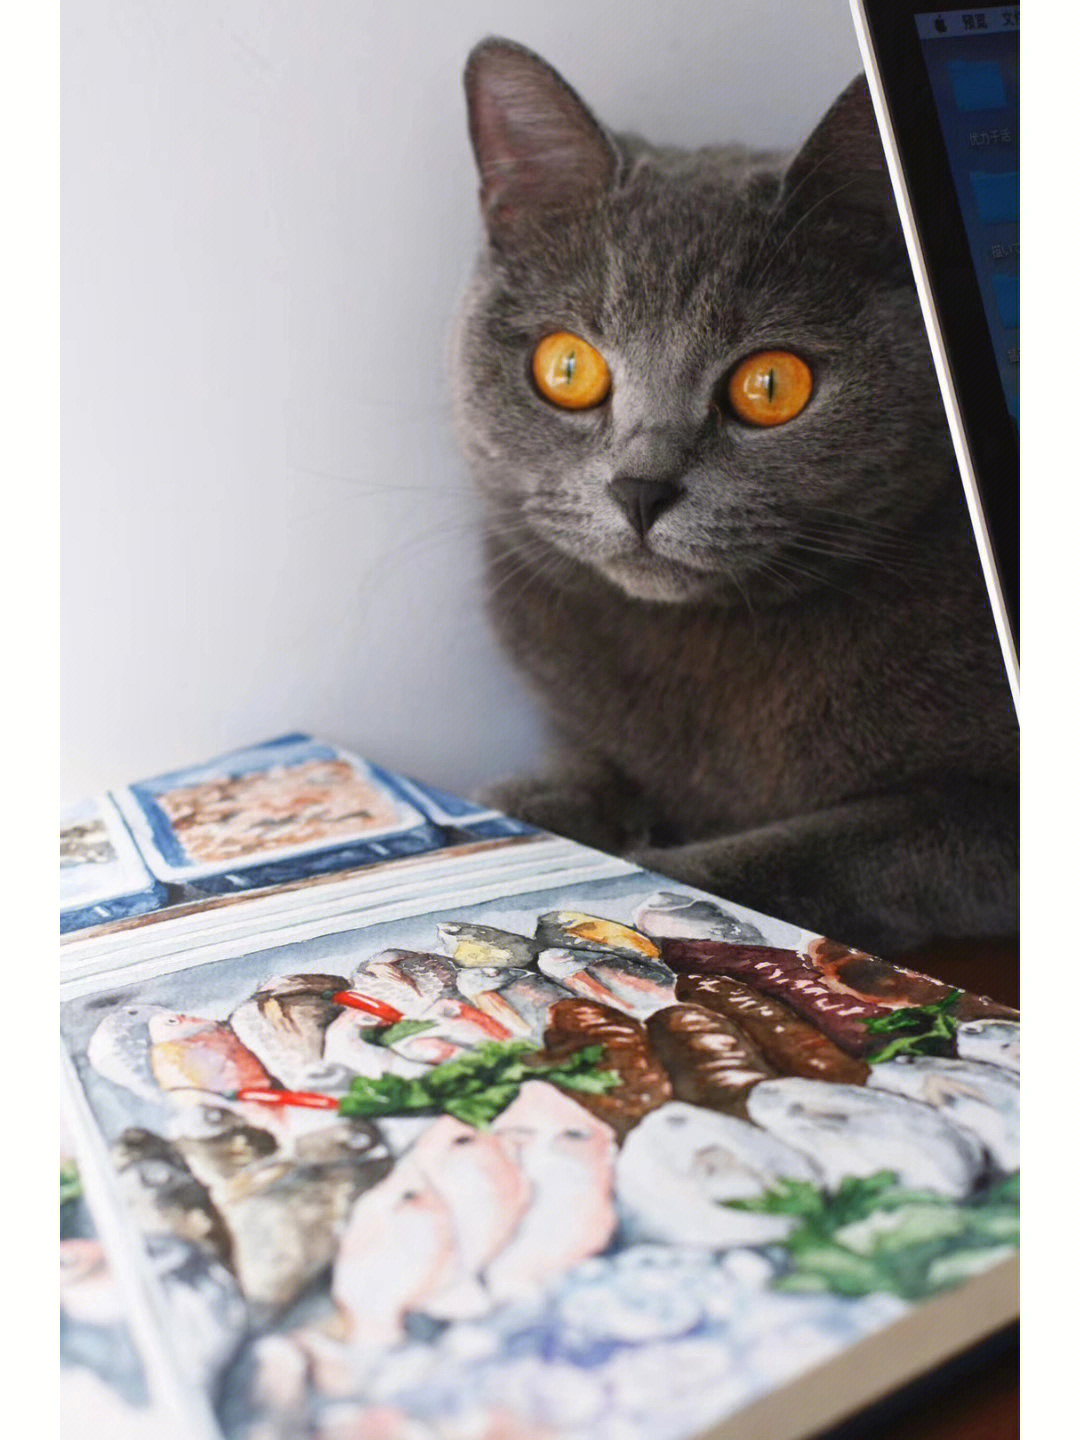 麻麻咱家需要买一个冰柜冻满我爱的鱼鱼～959595#猫#喵星人